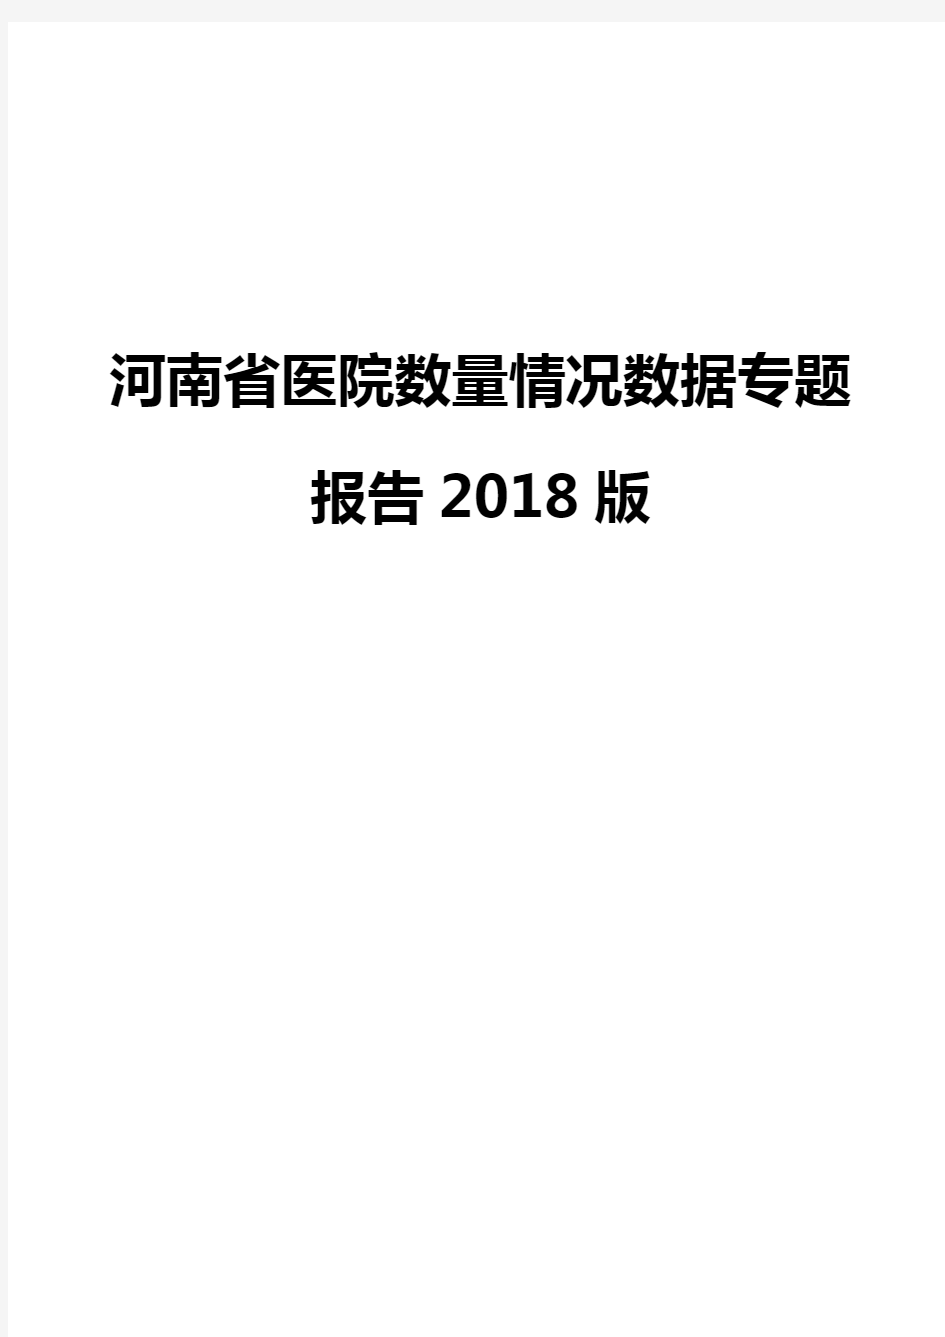 河南省医院数量情况数据专题报告2018版